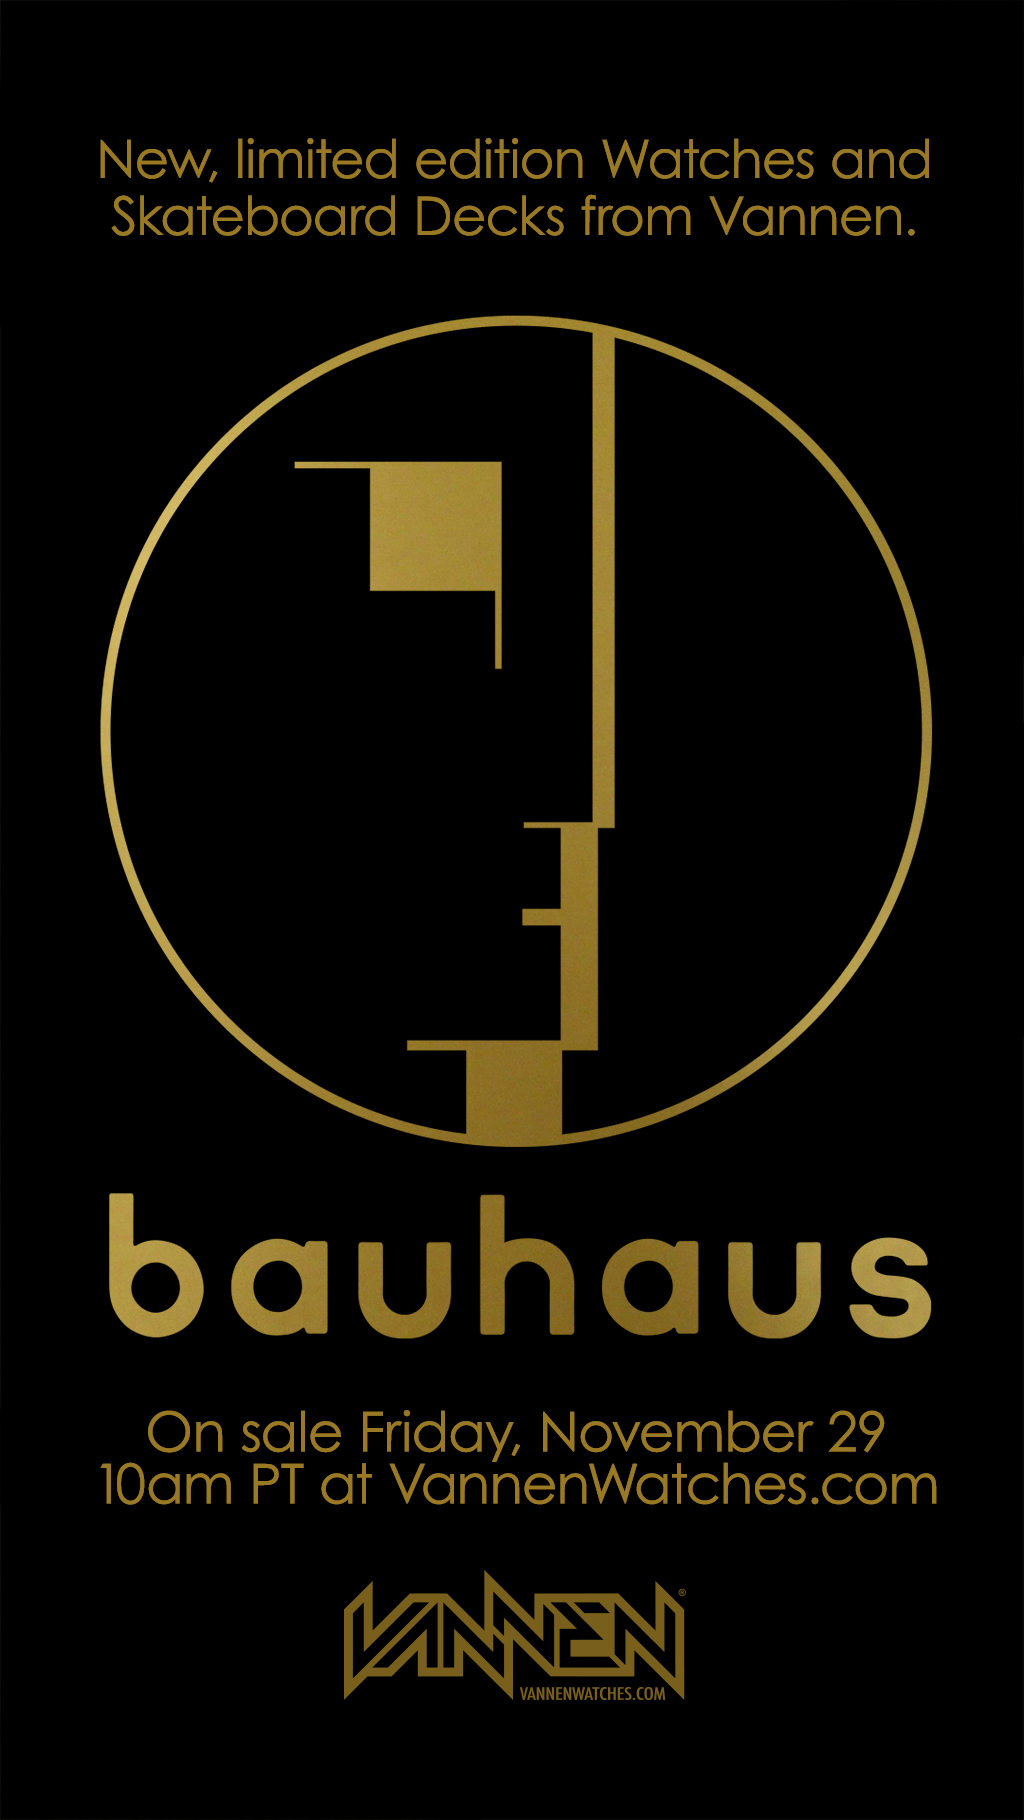 Announcement for new Vannen x Bauhaus Watches and Skateboard Decks